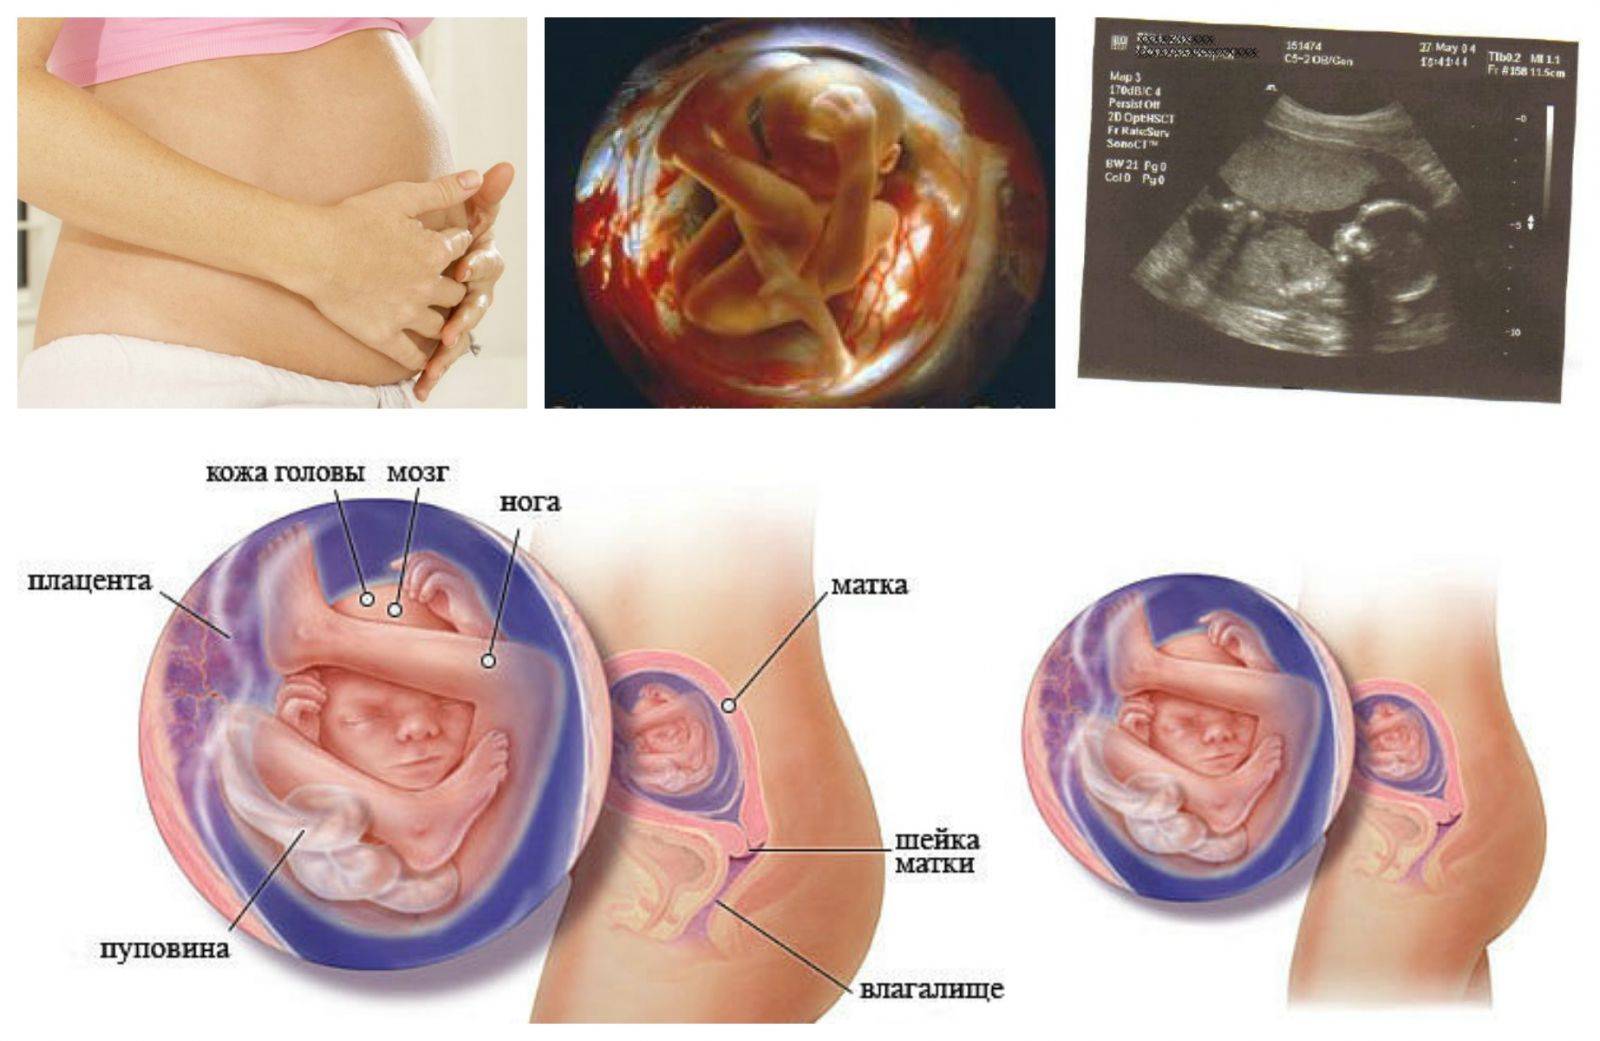 18 неделя беременности - развитие ребенка, фото животиков, правильное питание, увеличение веса, второй скрининг